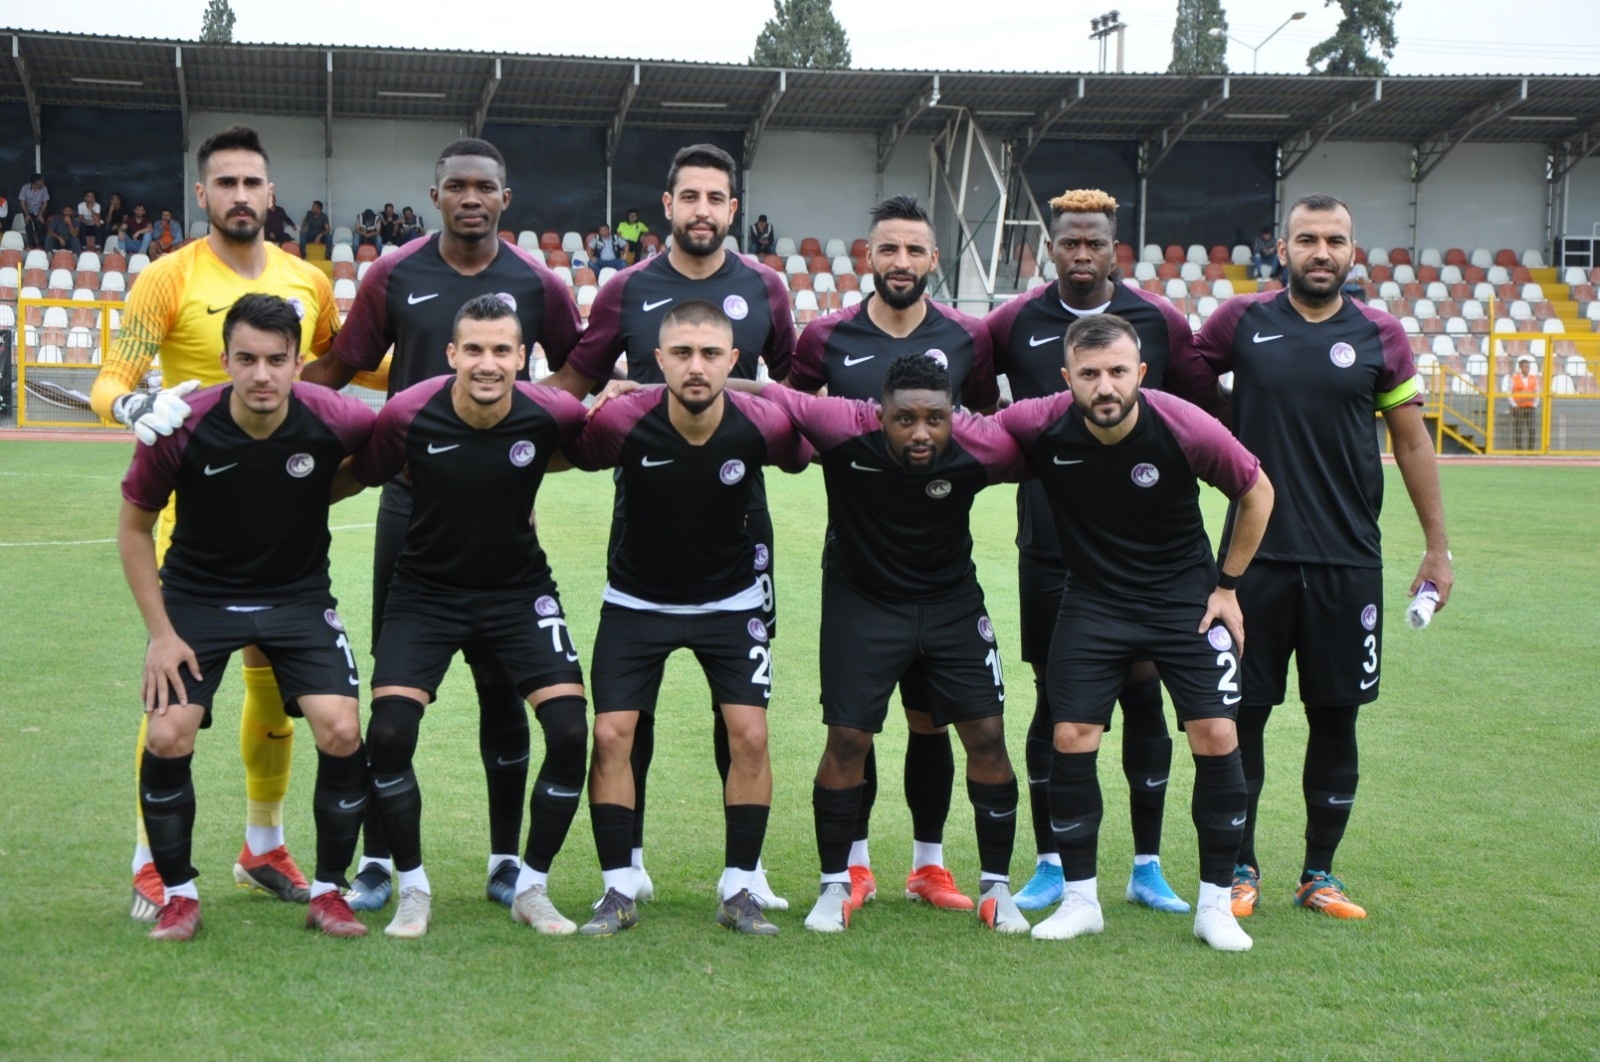 Ziraat Türkiye Kupası: Somaspor: 1- Keçiörengücü: 2